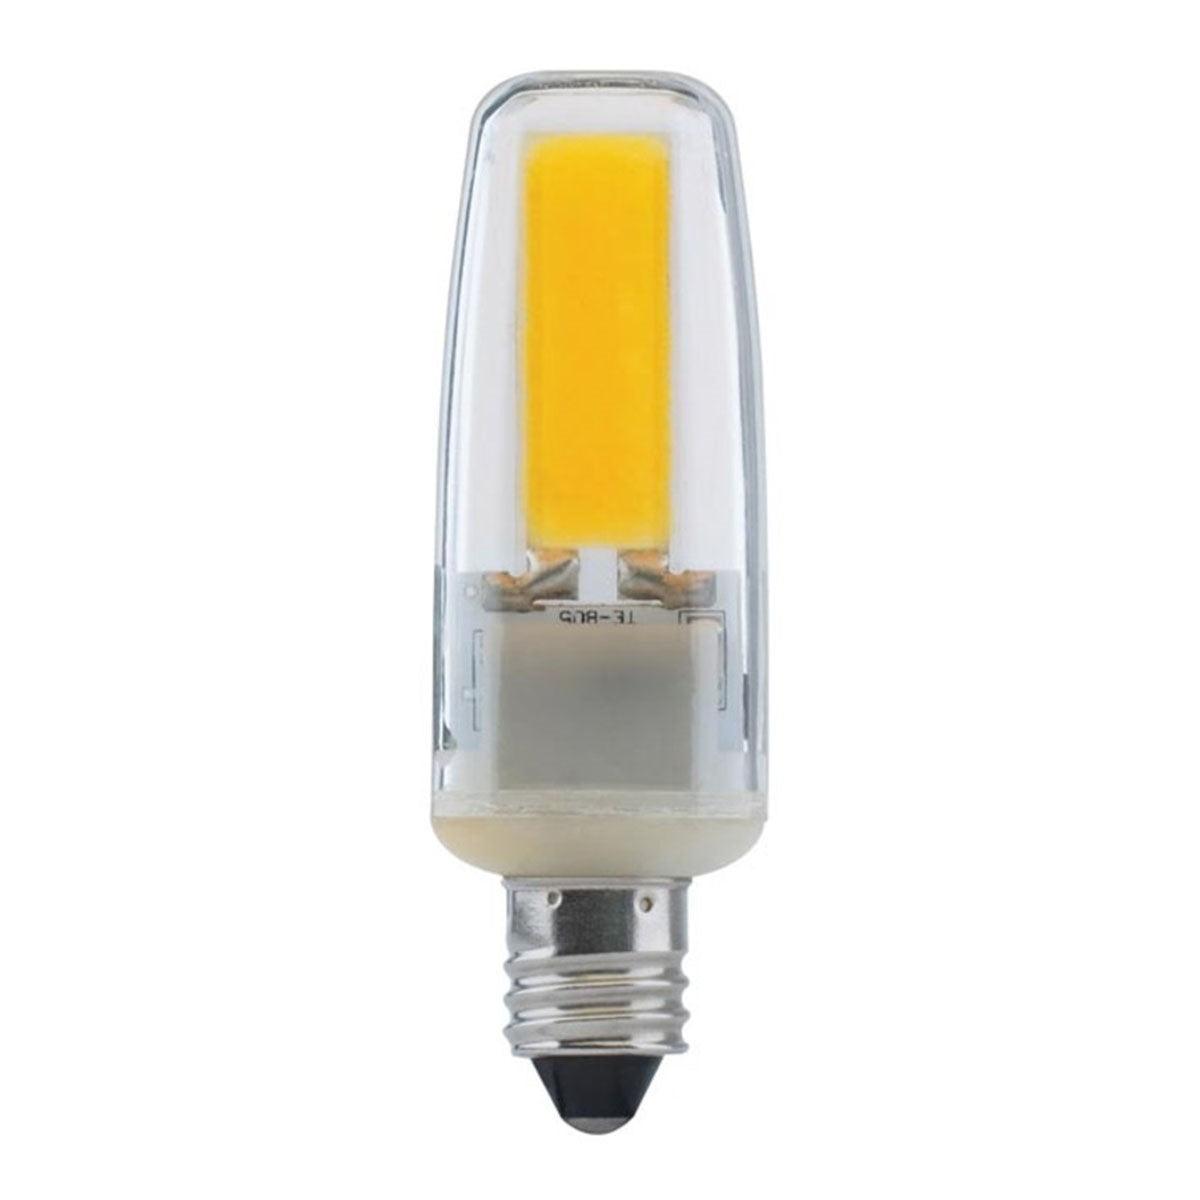 T4 Mini LED Bulb, 4 Watt, 480 Lumens, 3000K, E11 Mini-Candelabra Base, Clear Finish